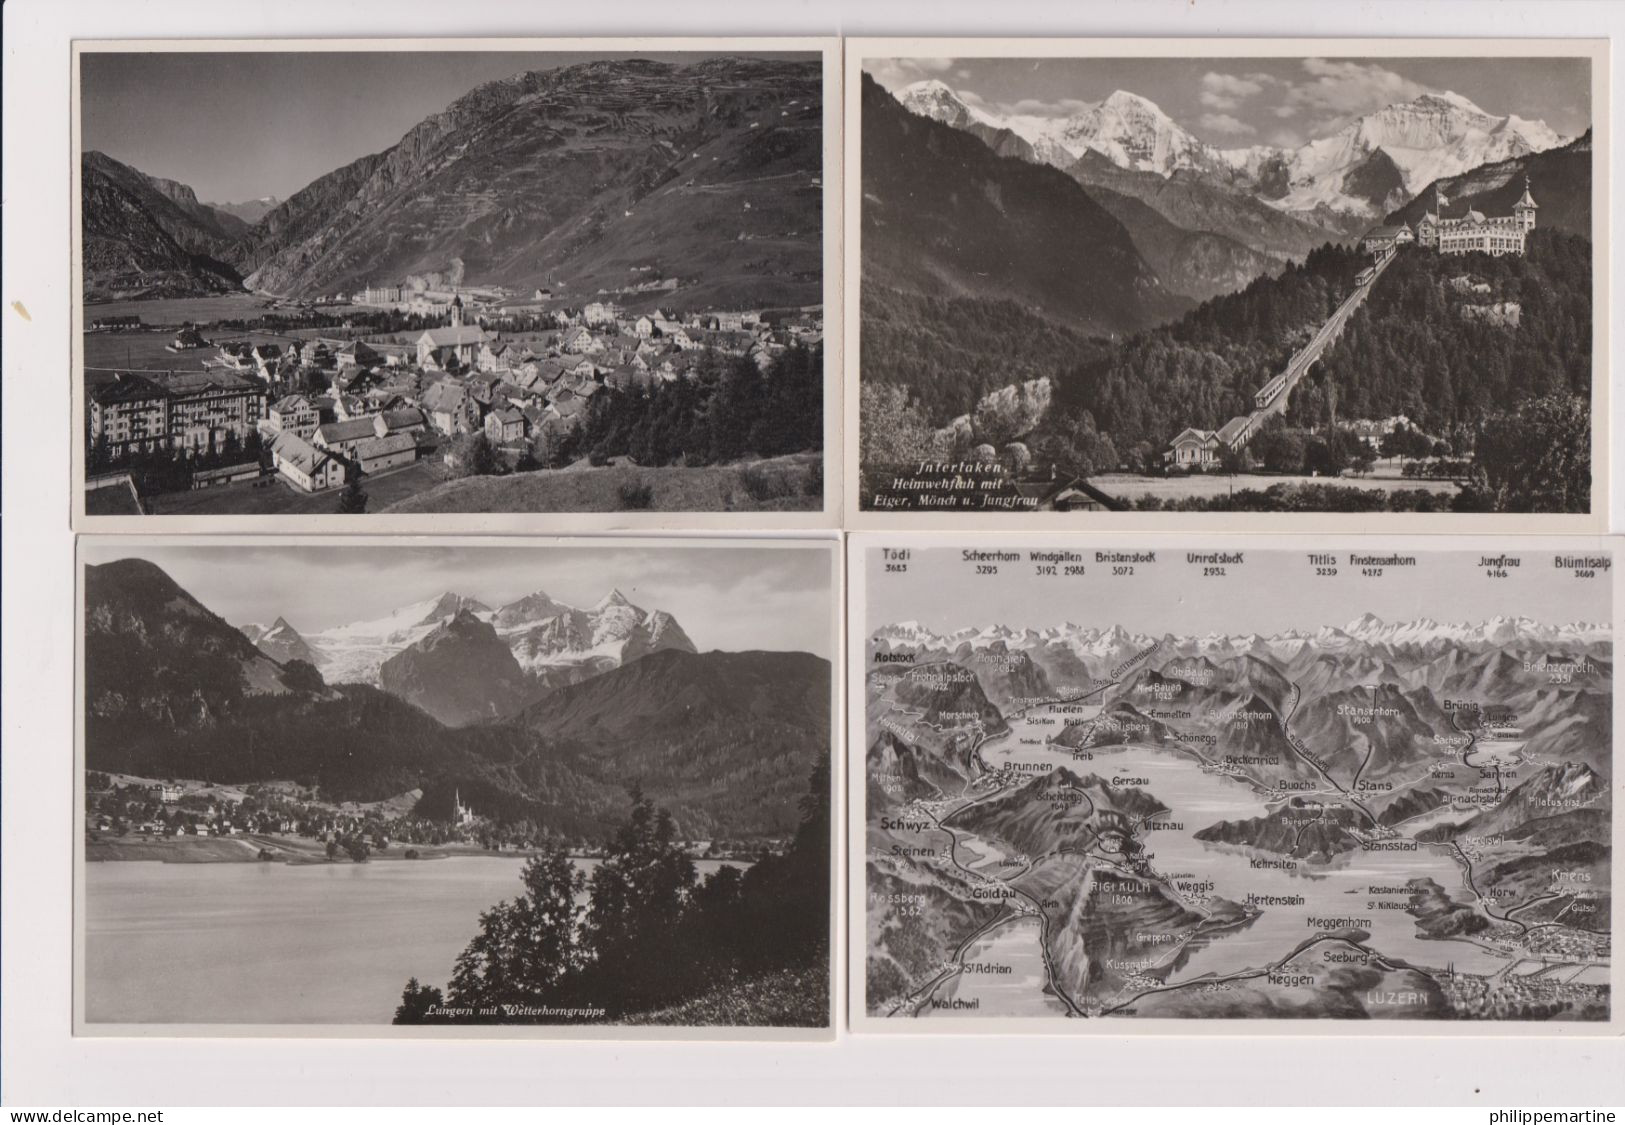 Suisse - Lot De 20 CPSM Neuves (Montreux, Interlaken, Boncourt, Gletsch, Wilderswil....) - Sammlungen & Sammellose